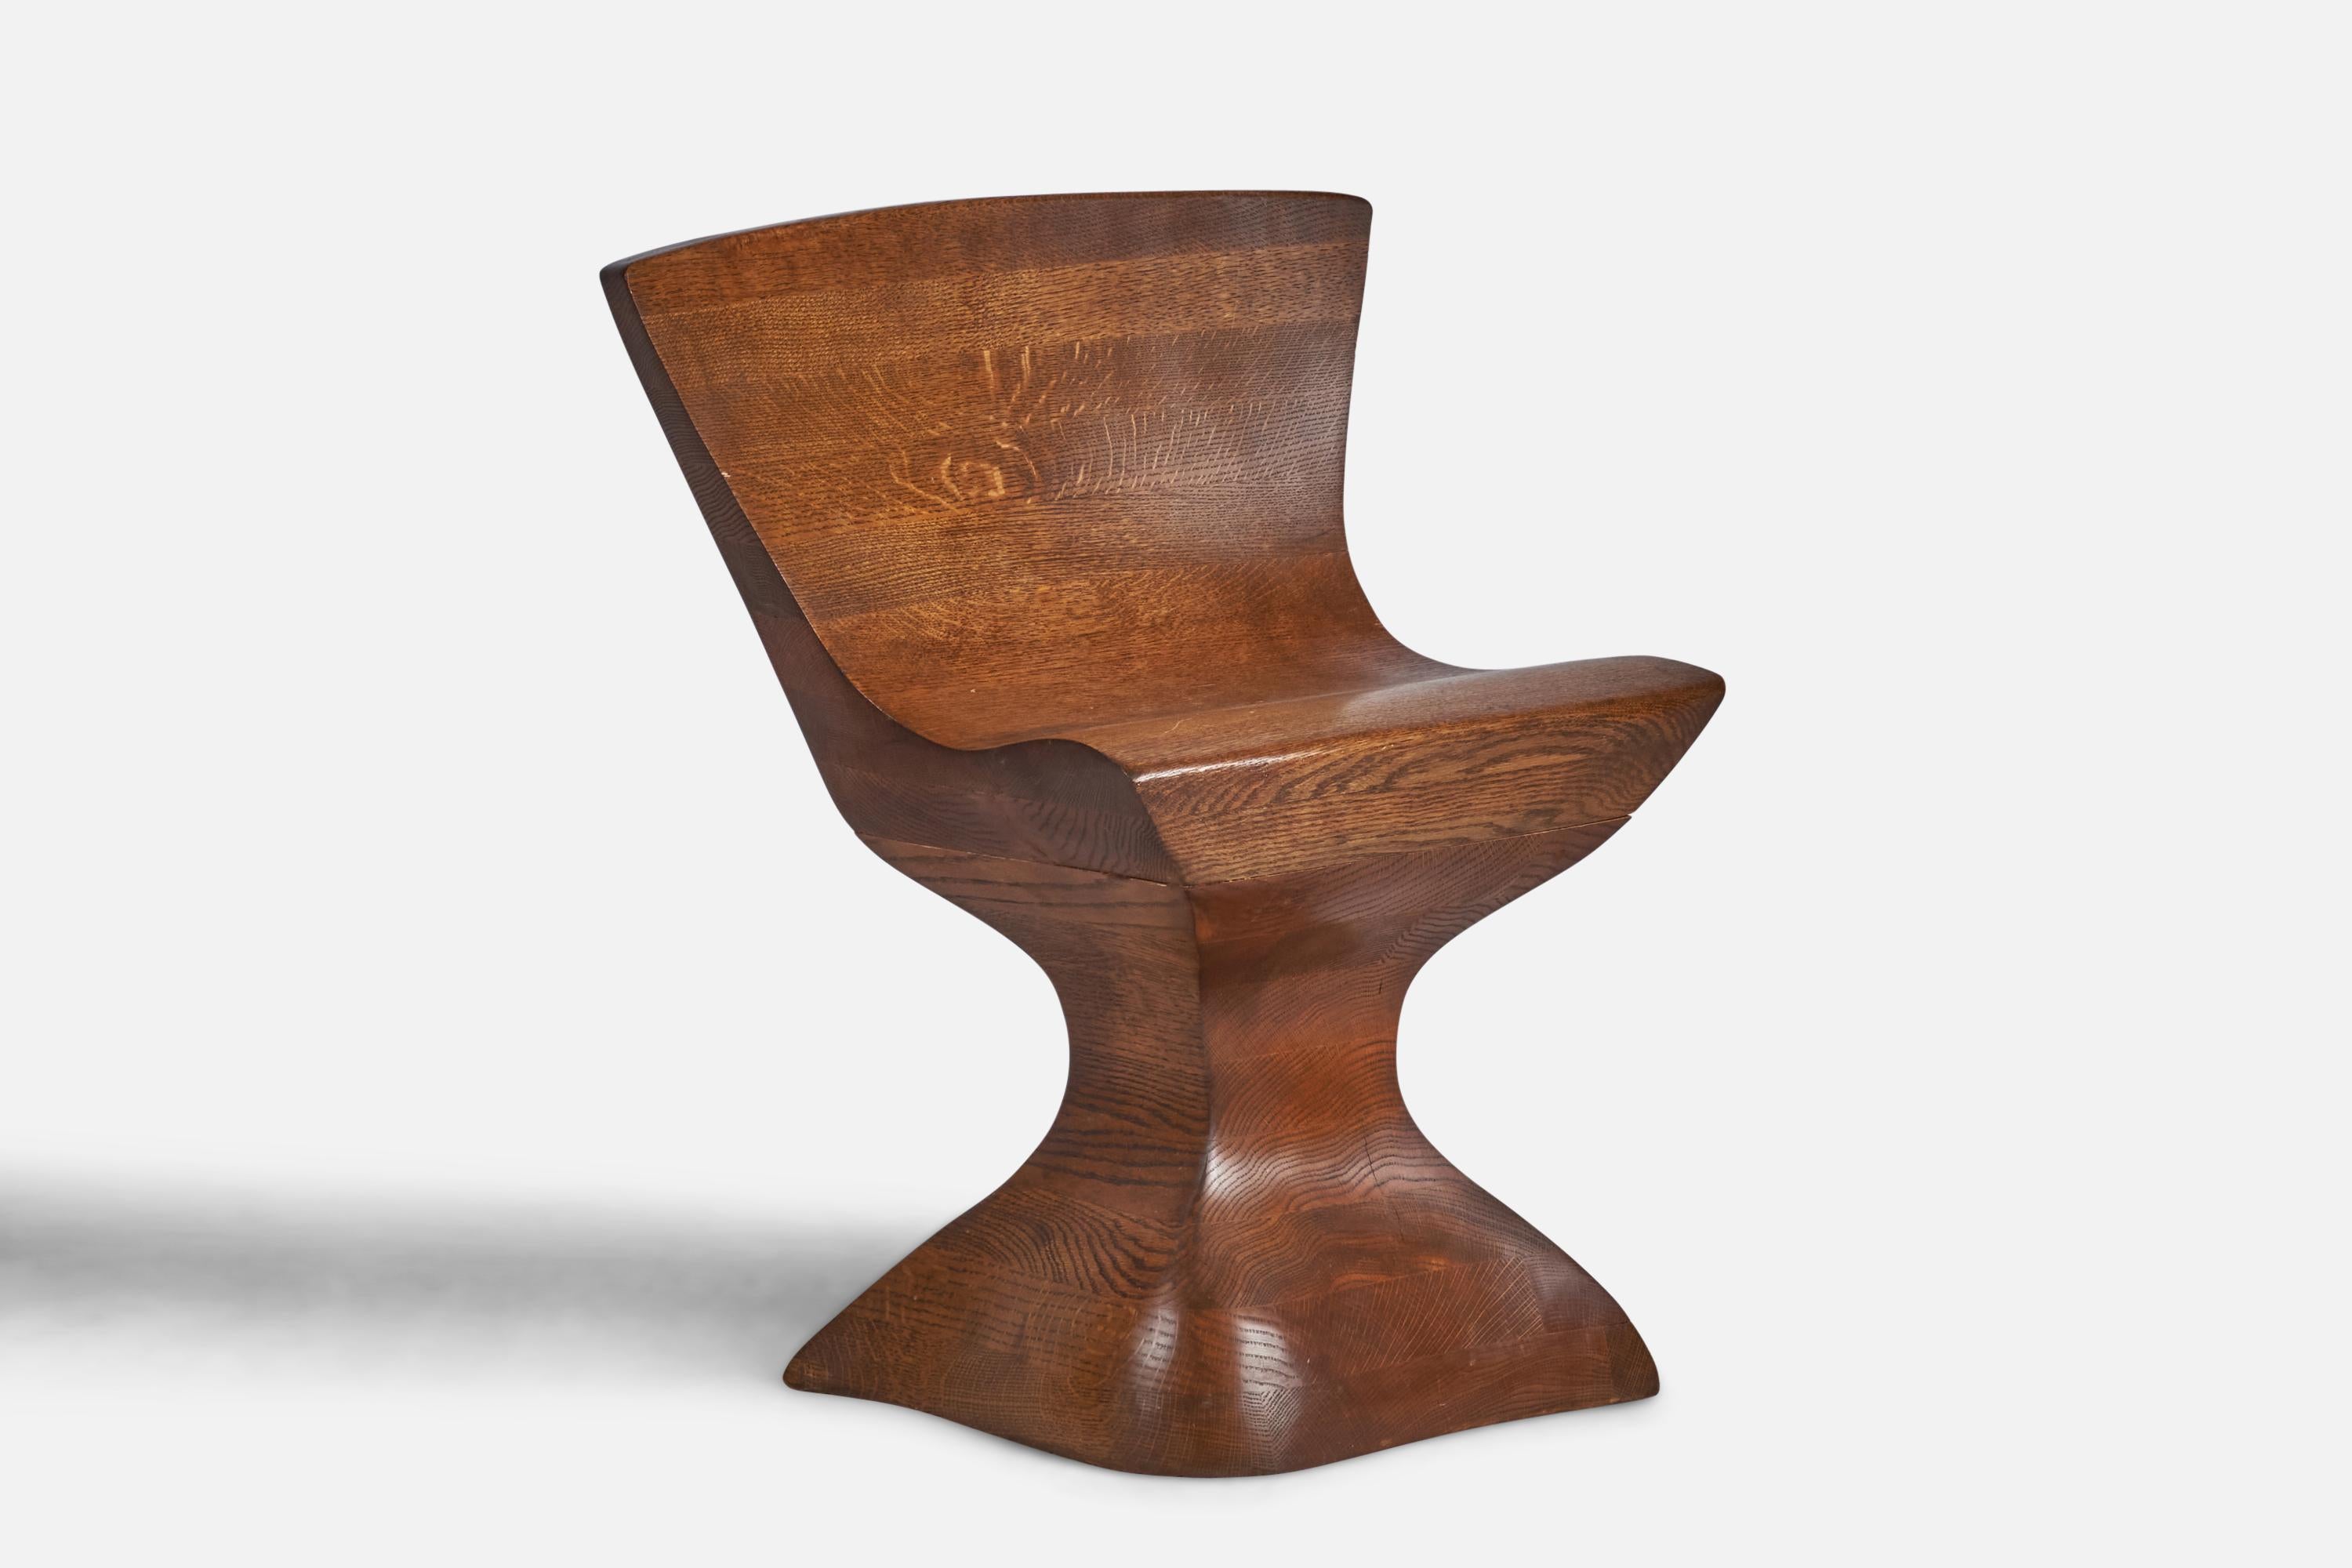 Ein Beistellstuhl aus laminierter und geschnitzter Eiche, entworfen und hergestellt in den USA, ca. 1980er Jahre.

16,75